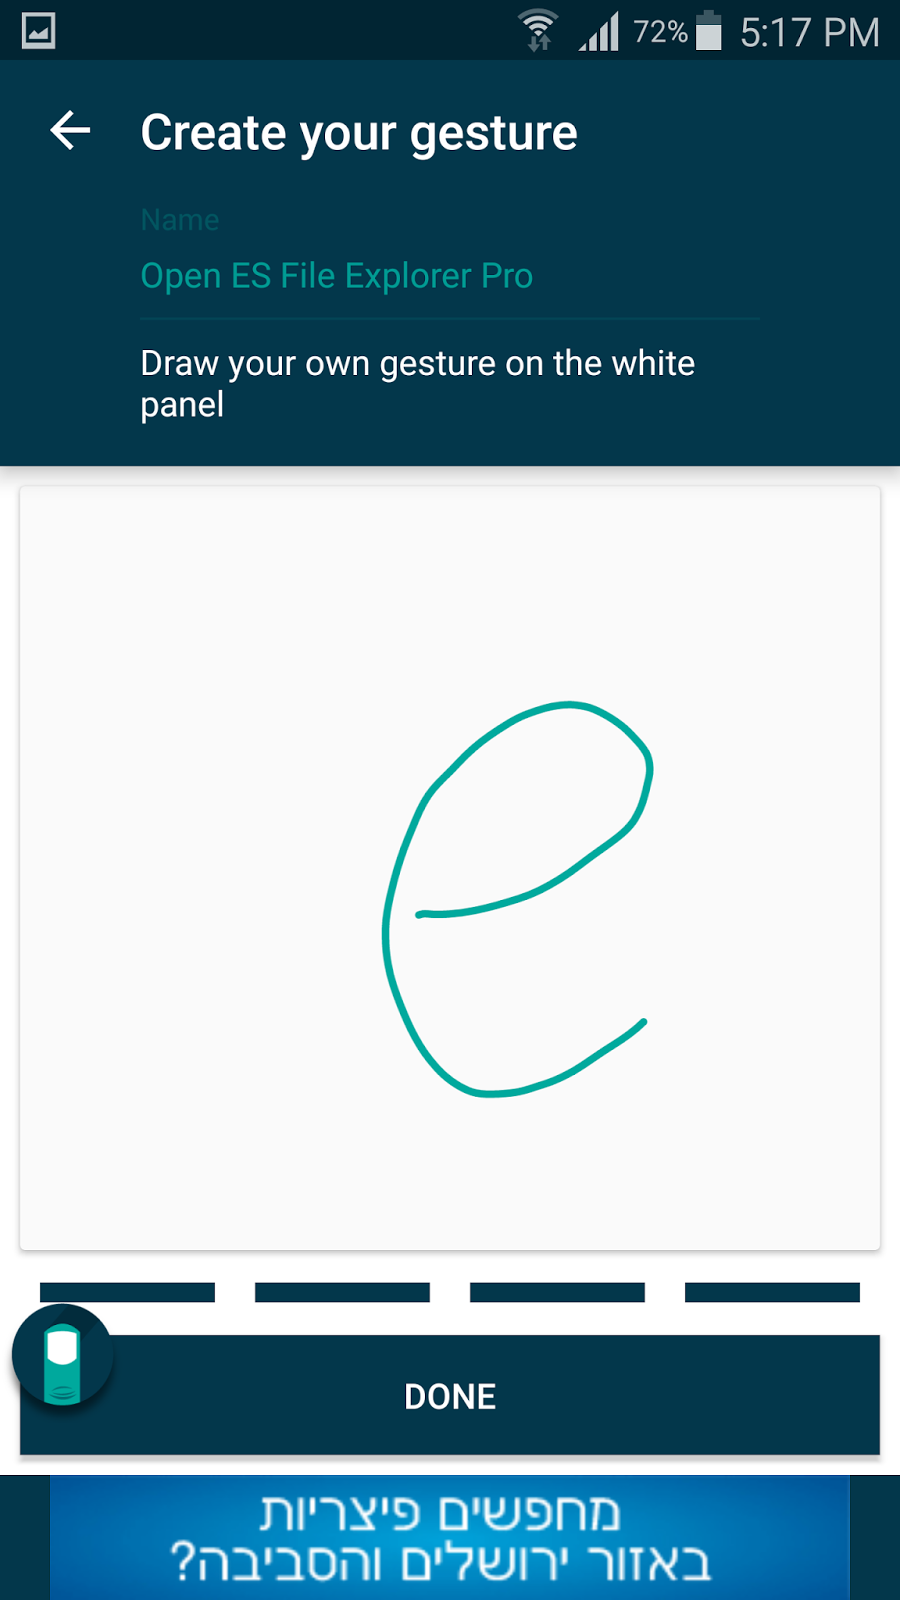 تطبيق Finger Gesture للوصول السريع للتطبيقات عبر الرسم على الشاشة | بحرية درويد